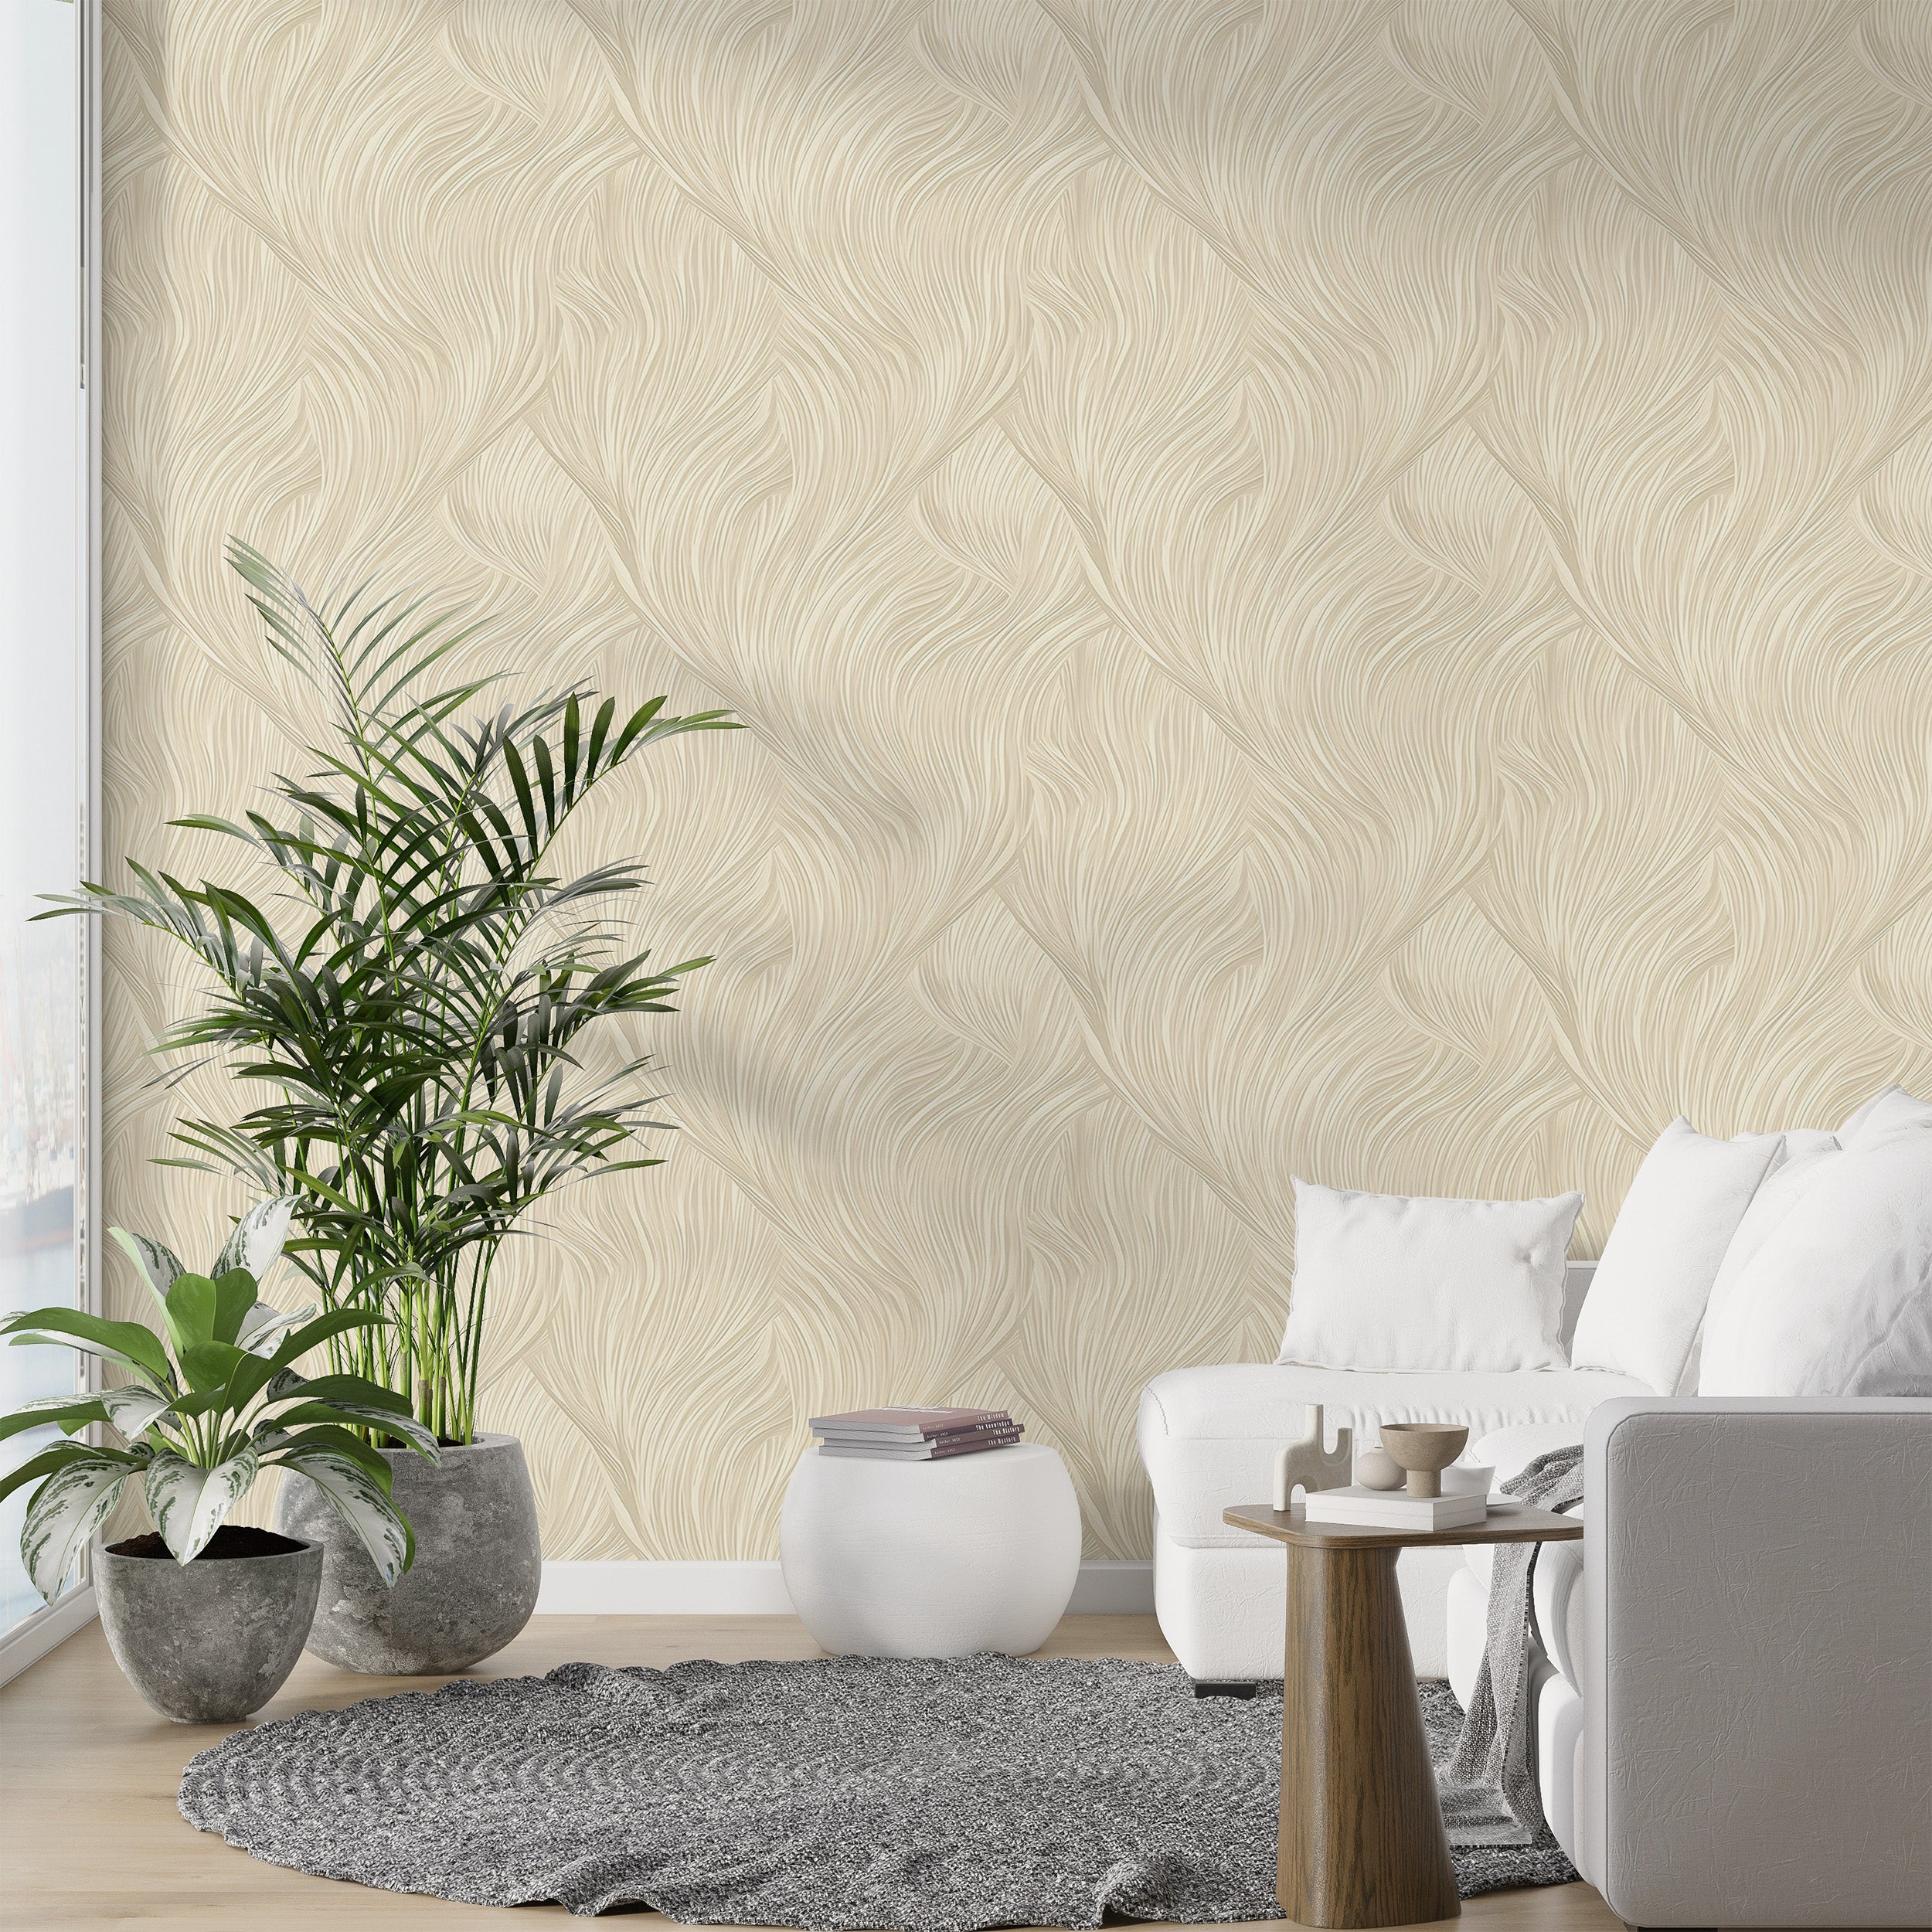 Elegant Beige Waves Wallpaper in Room Setting